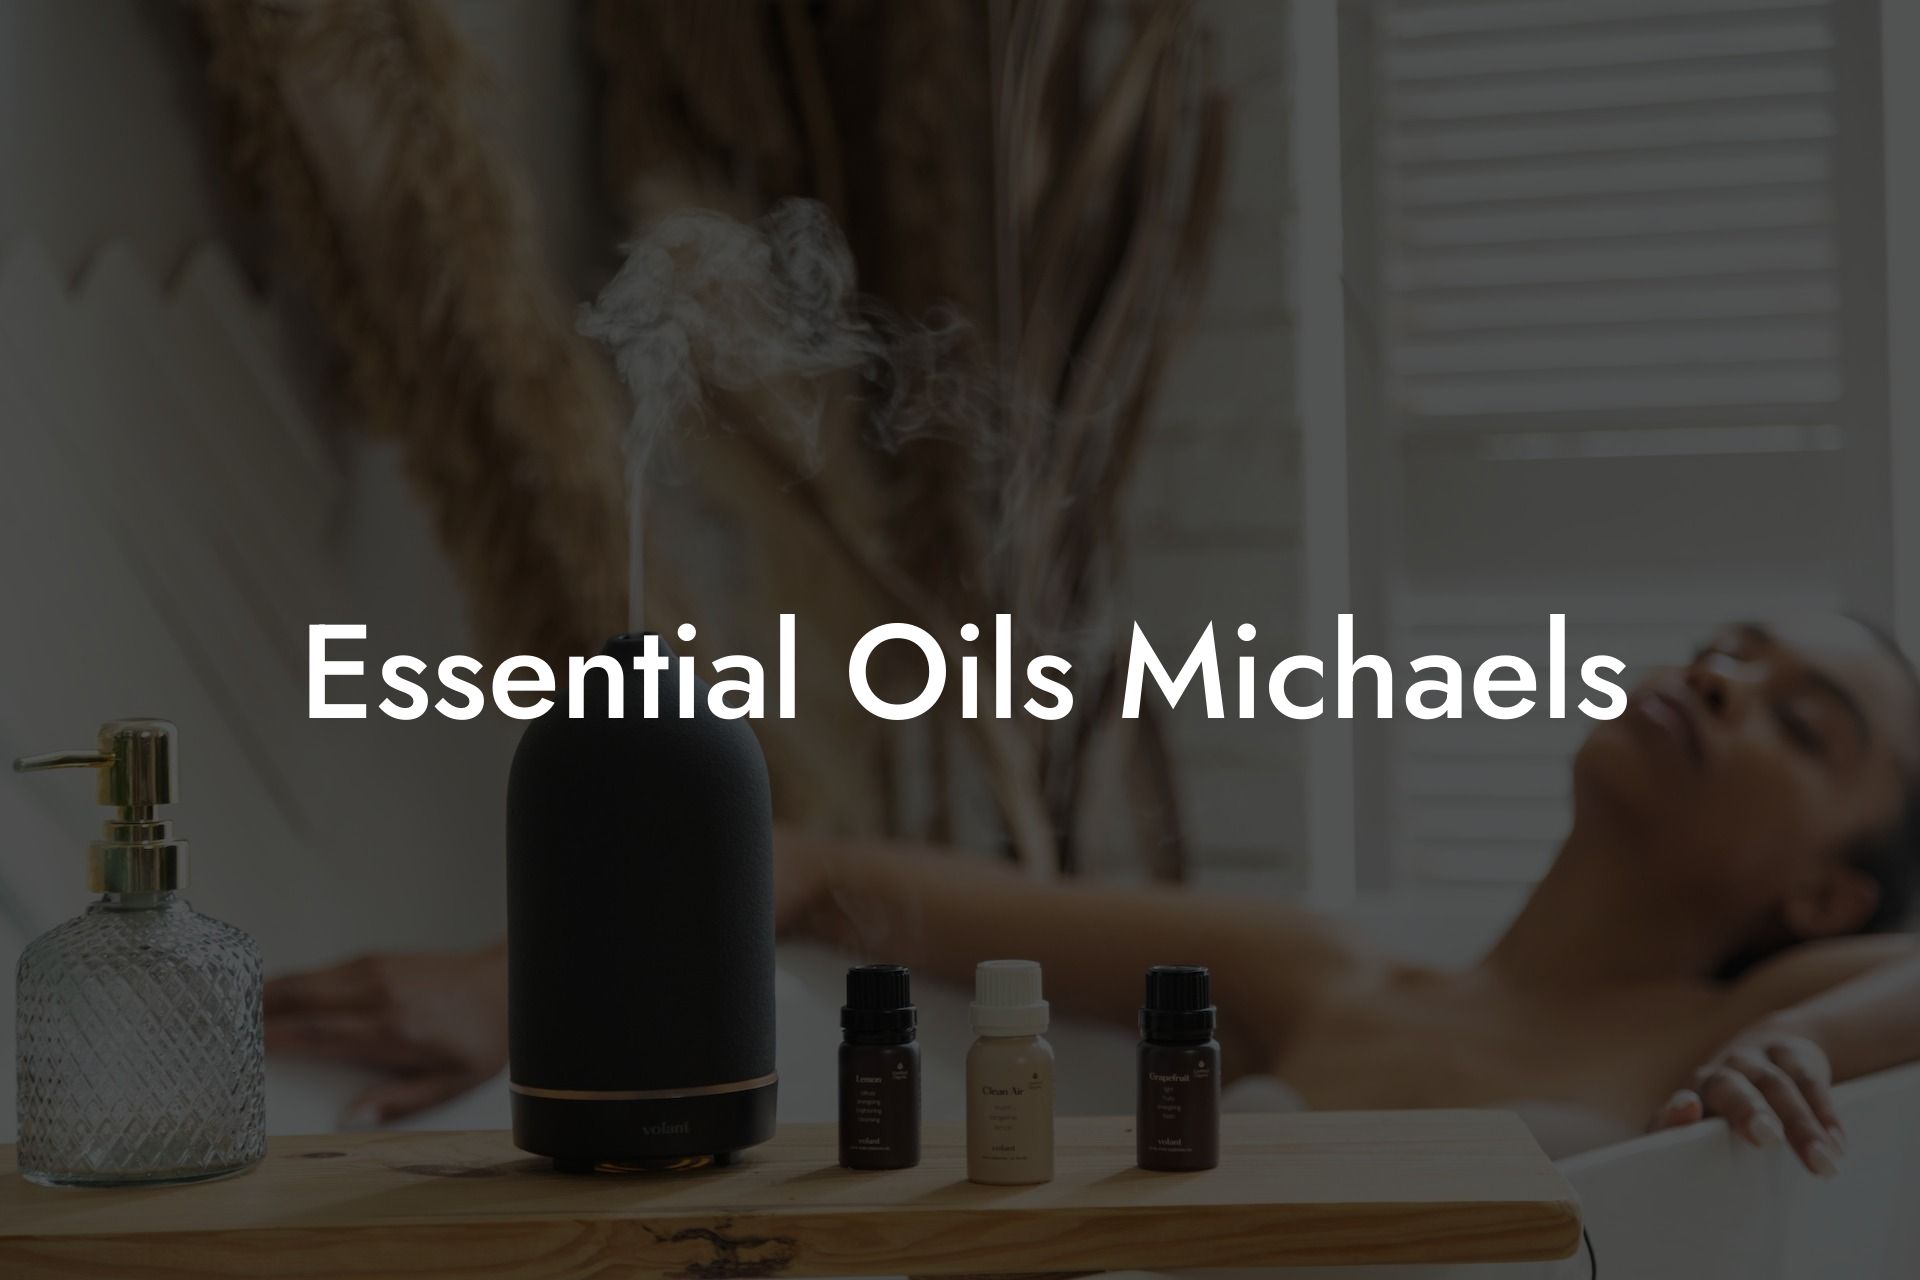 Essential Oils Michaels